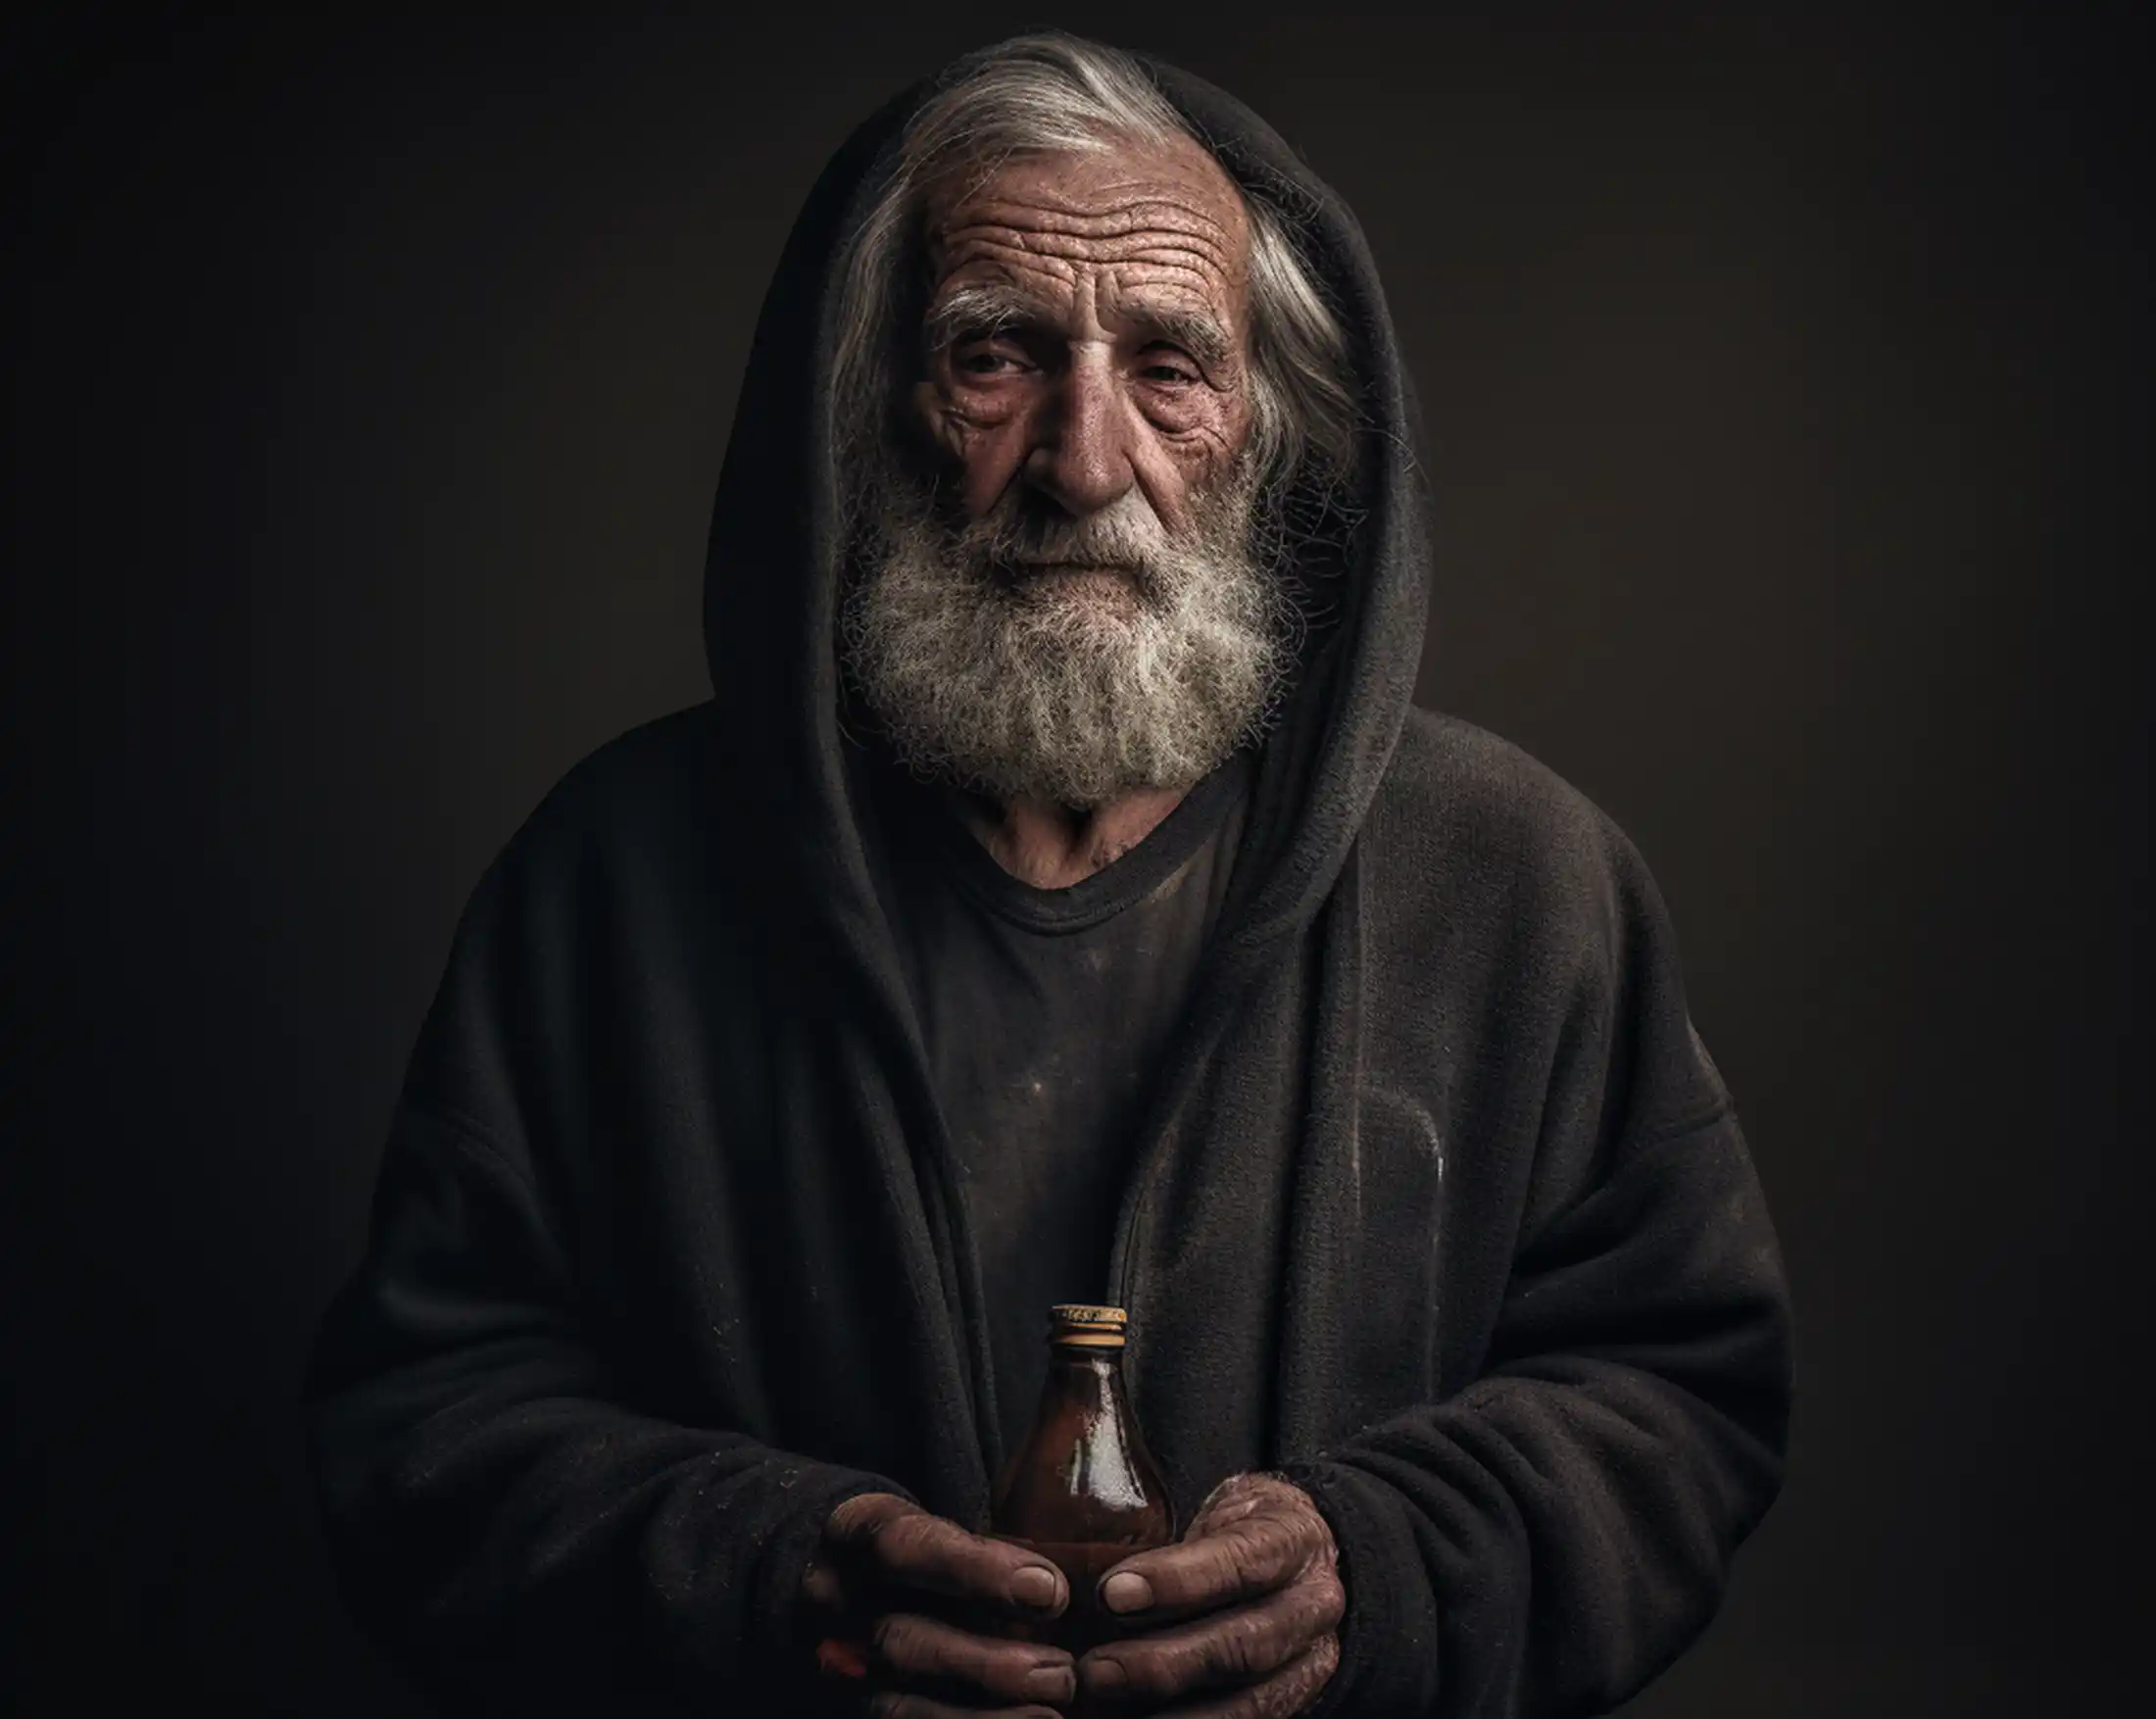 Alter Mann vor dunklem Hintergrund hält eine Flasche in den Händen in der sich Kaltgepresstes Olivenöl und Olivenöl extra vergine befindet